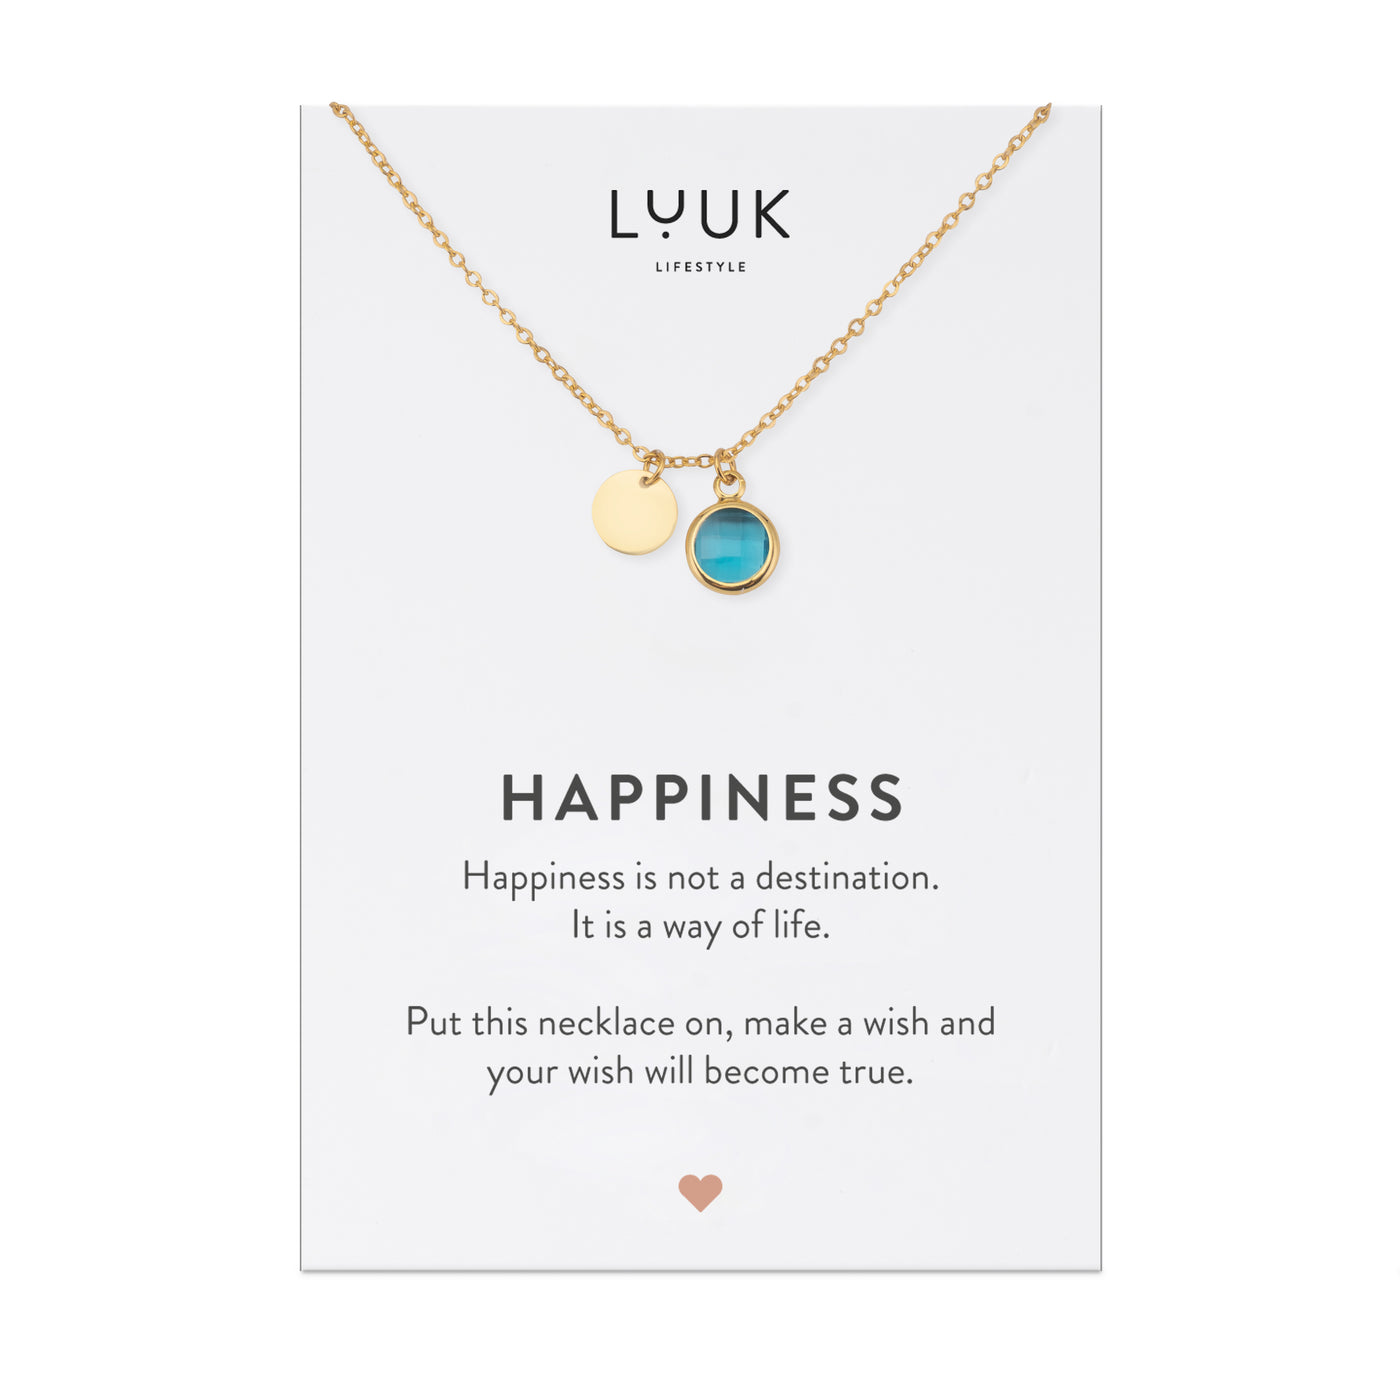 Vergoldete Halskette mit hellblauem Edelstein Anhänger auf Happiness Spruchkarte von der Brand Luuk Lifestyle